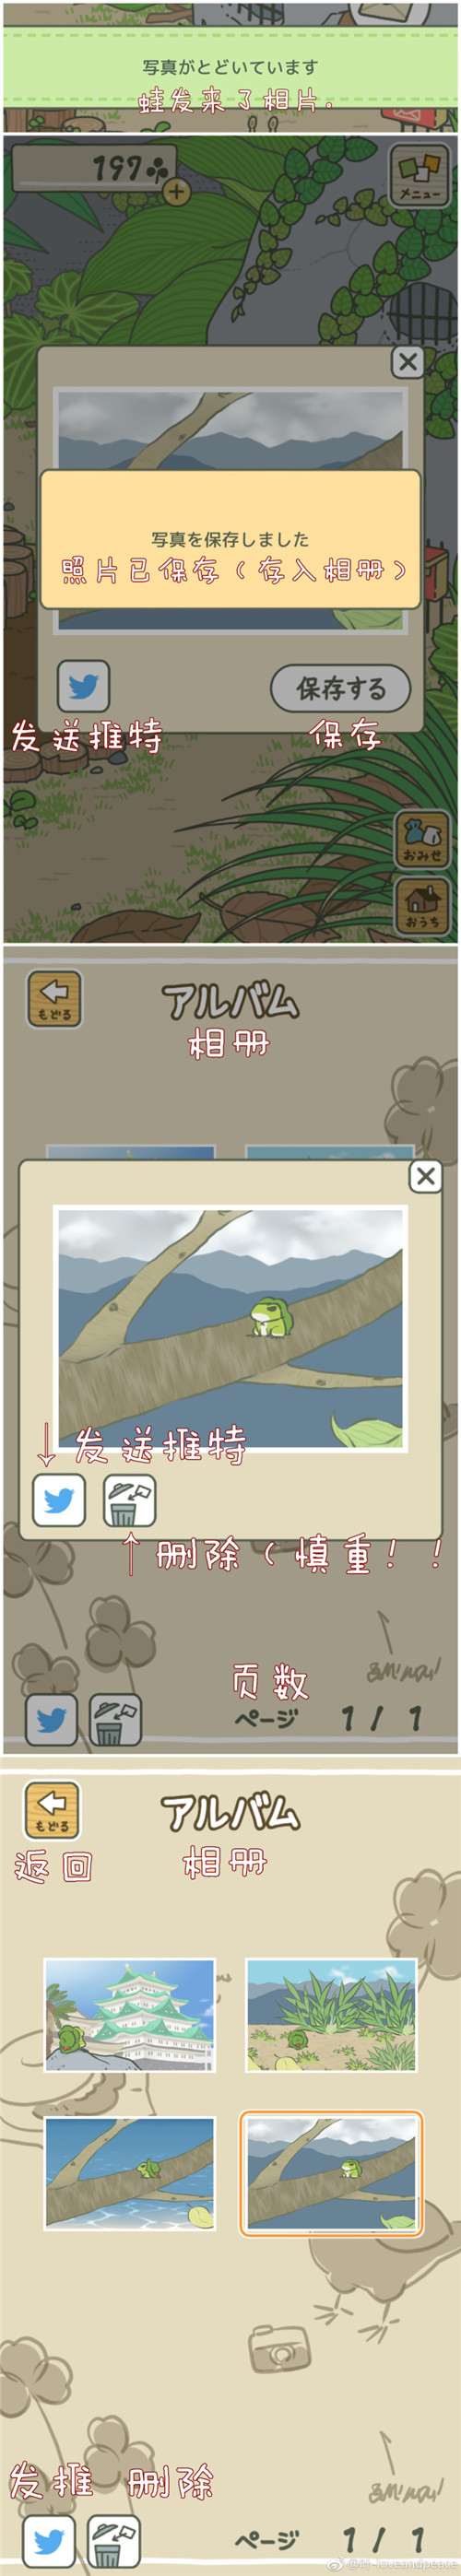 旅行青蛙苹果版怎么把语言设置成中文介绍